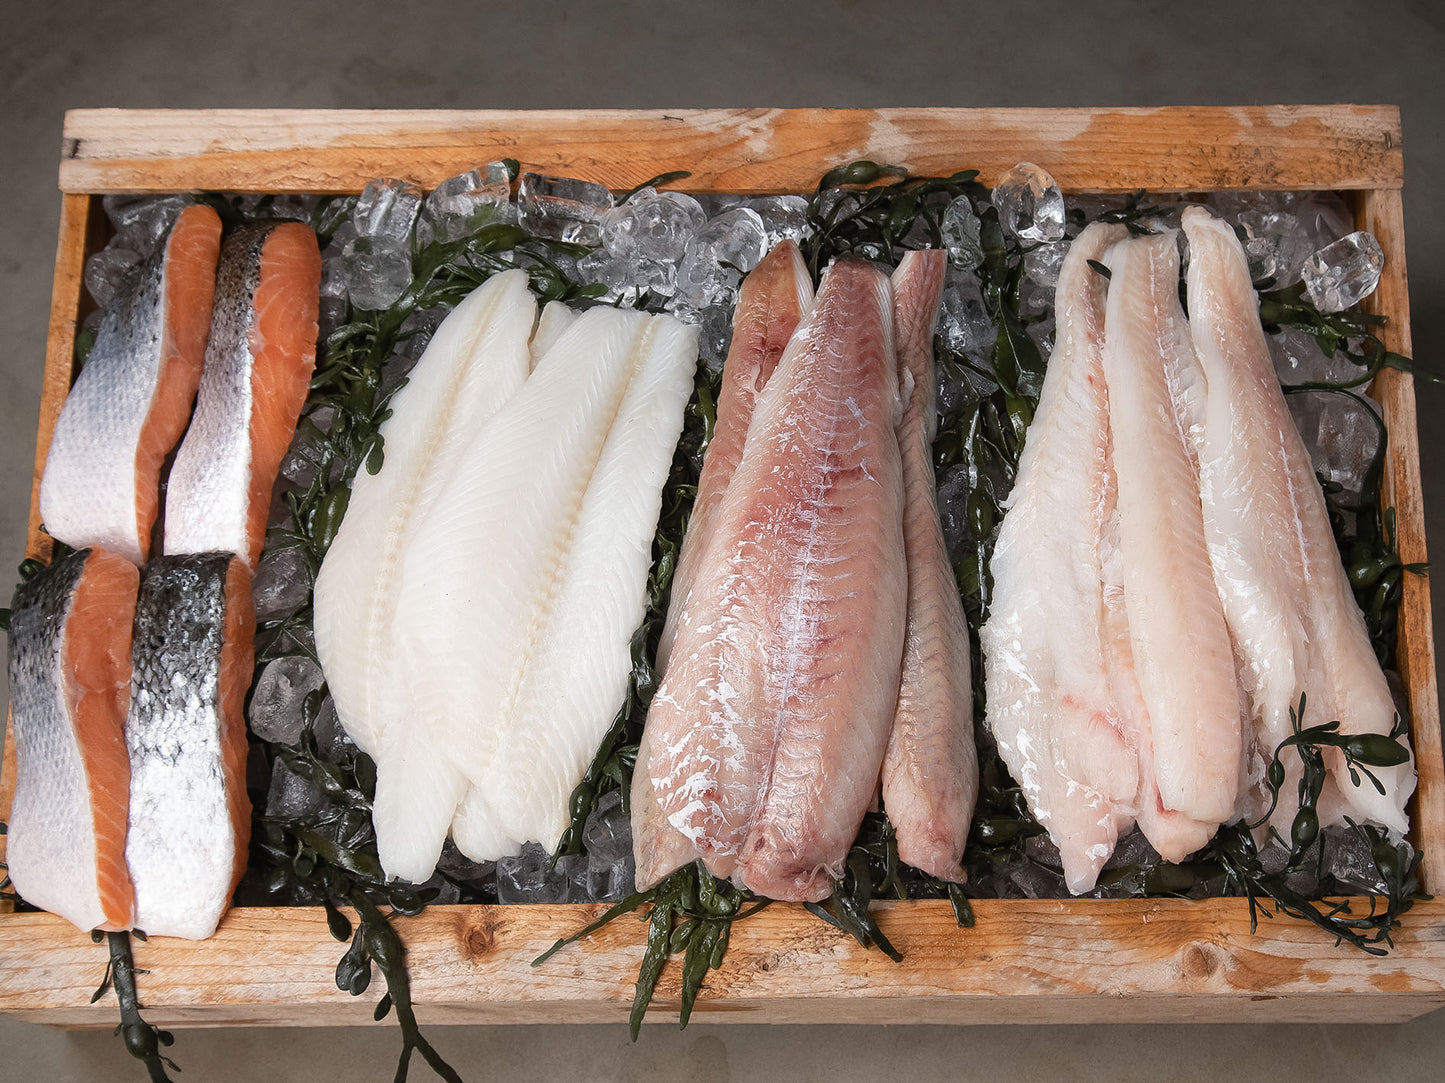 amerikansk löjrom köpa löjrom köpa fisk köpa skaldjur hemleverans stockholm fisk och skaldjur av finaste kvalitet fiskbilen Sigges fisk